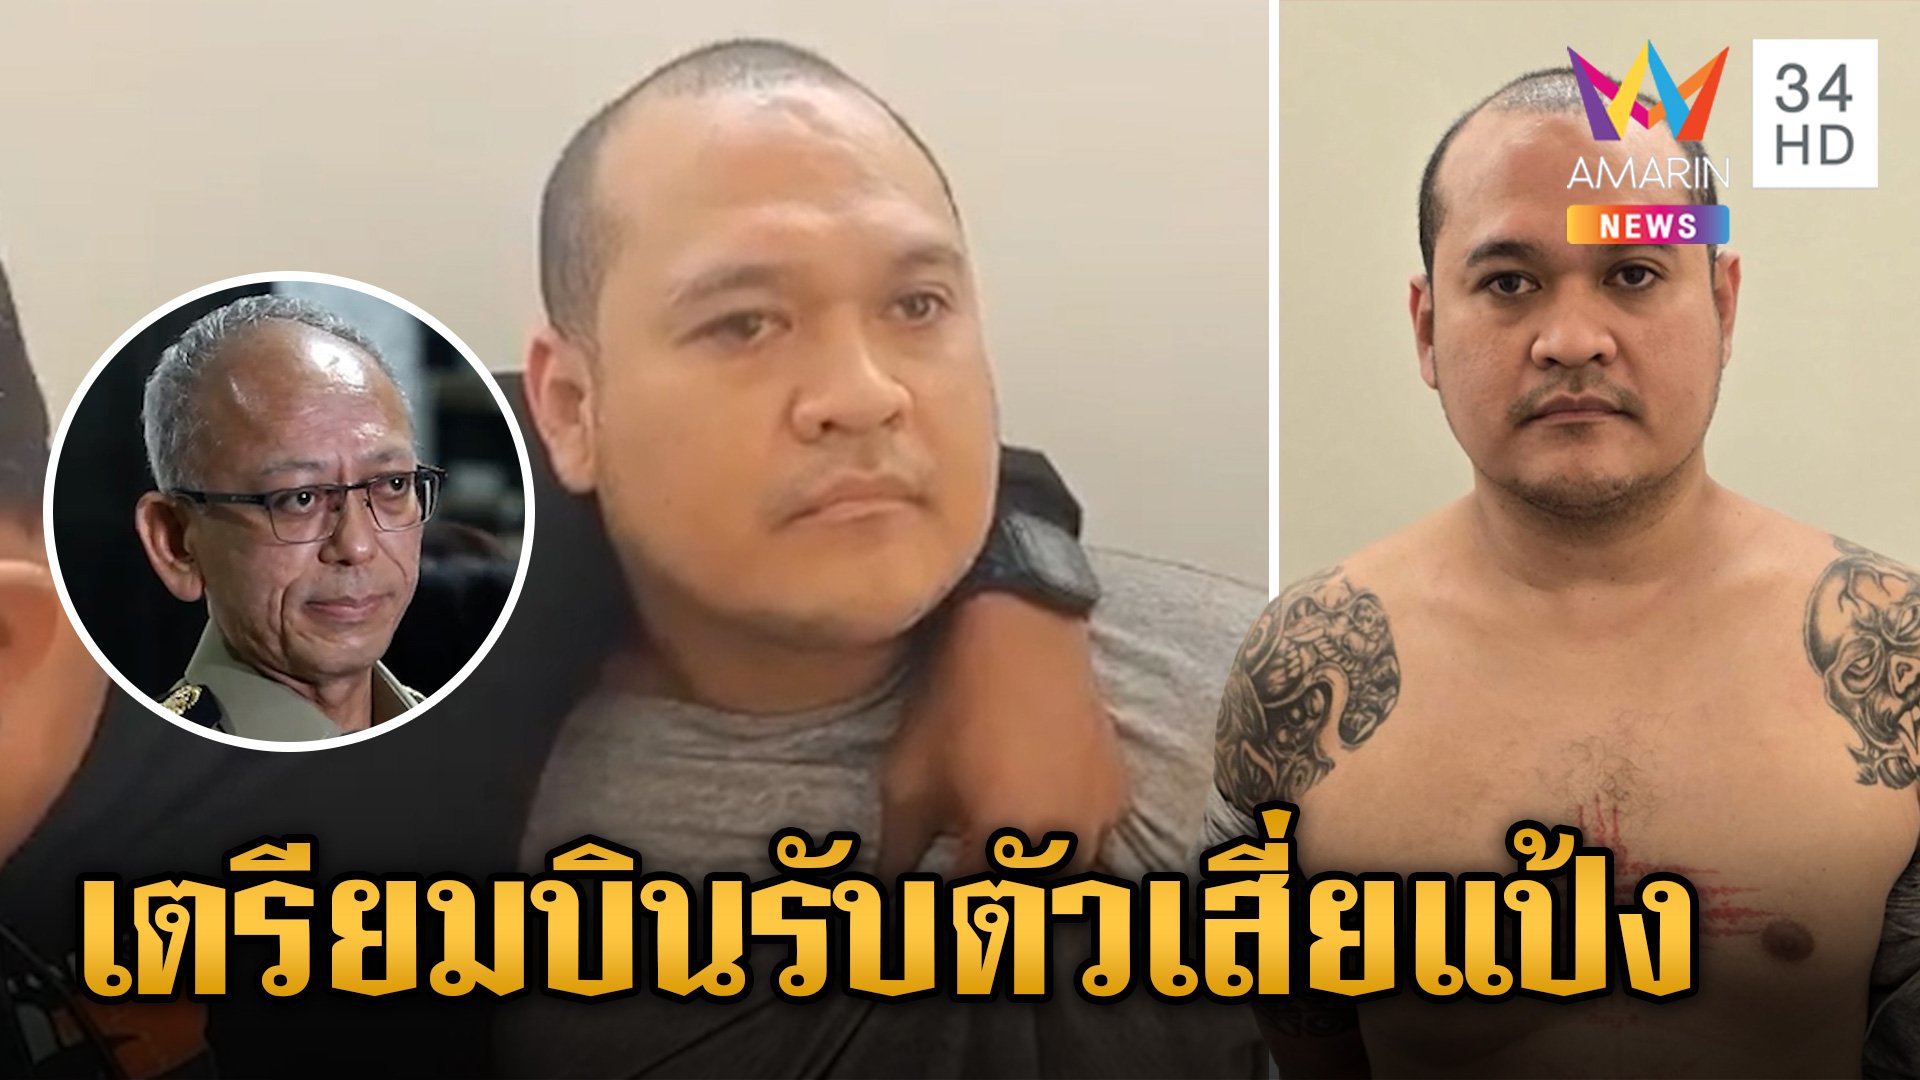 รมว.ยุติธรรม เตรียมบินรับตัว "แป้ง นาโหนด" กลับมารับโทษที่ไทย! | ข่าวเย็นอมรินทร์ | 31 พ.ค. 67 | AMARIN TVHD34